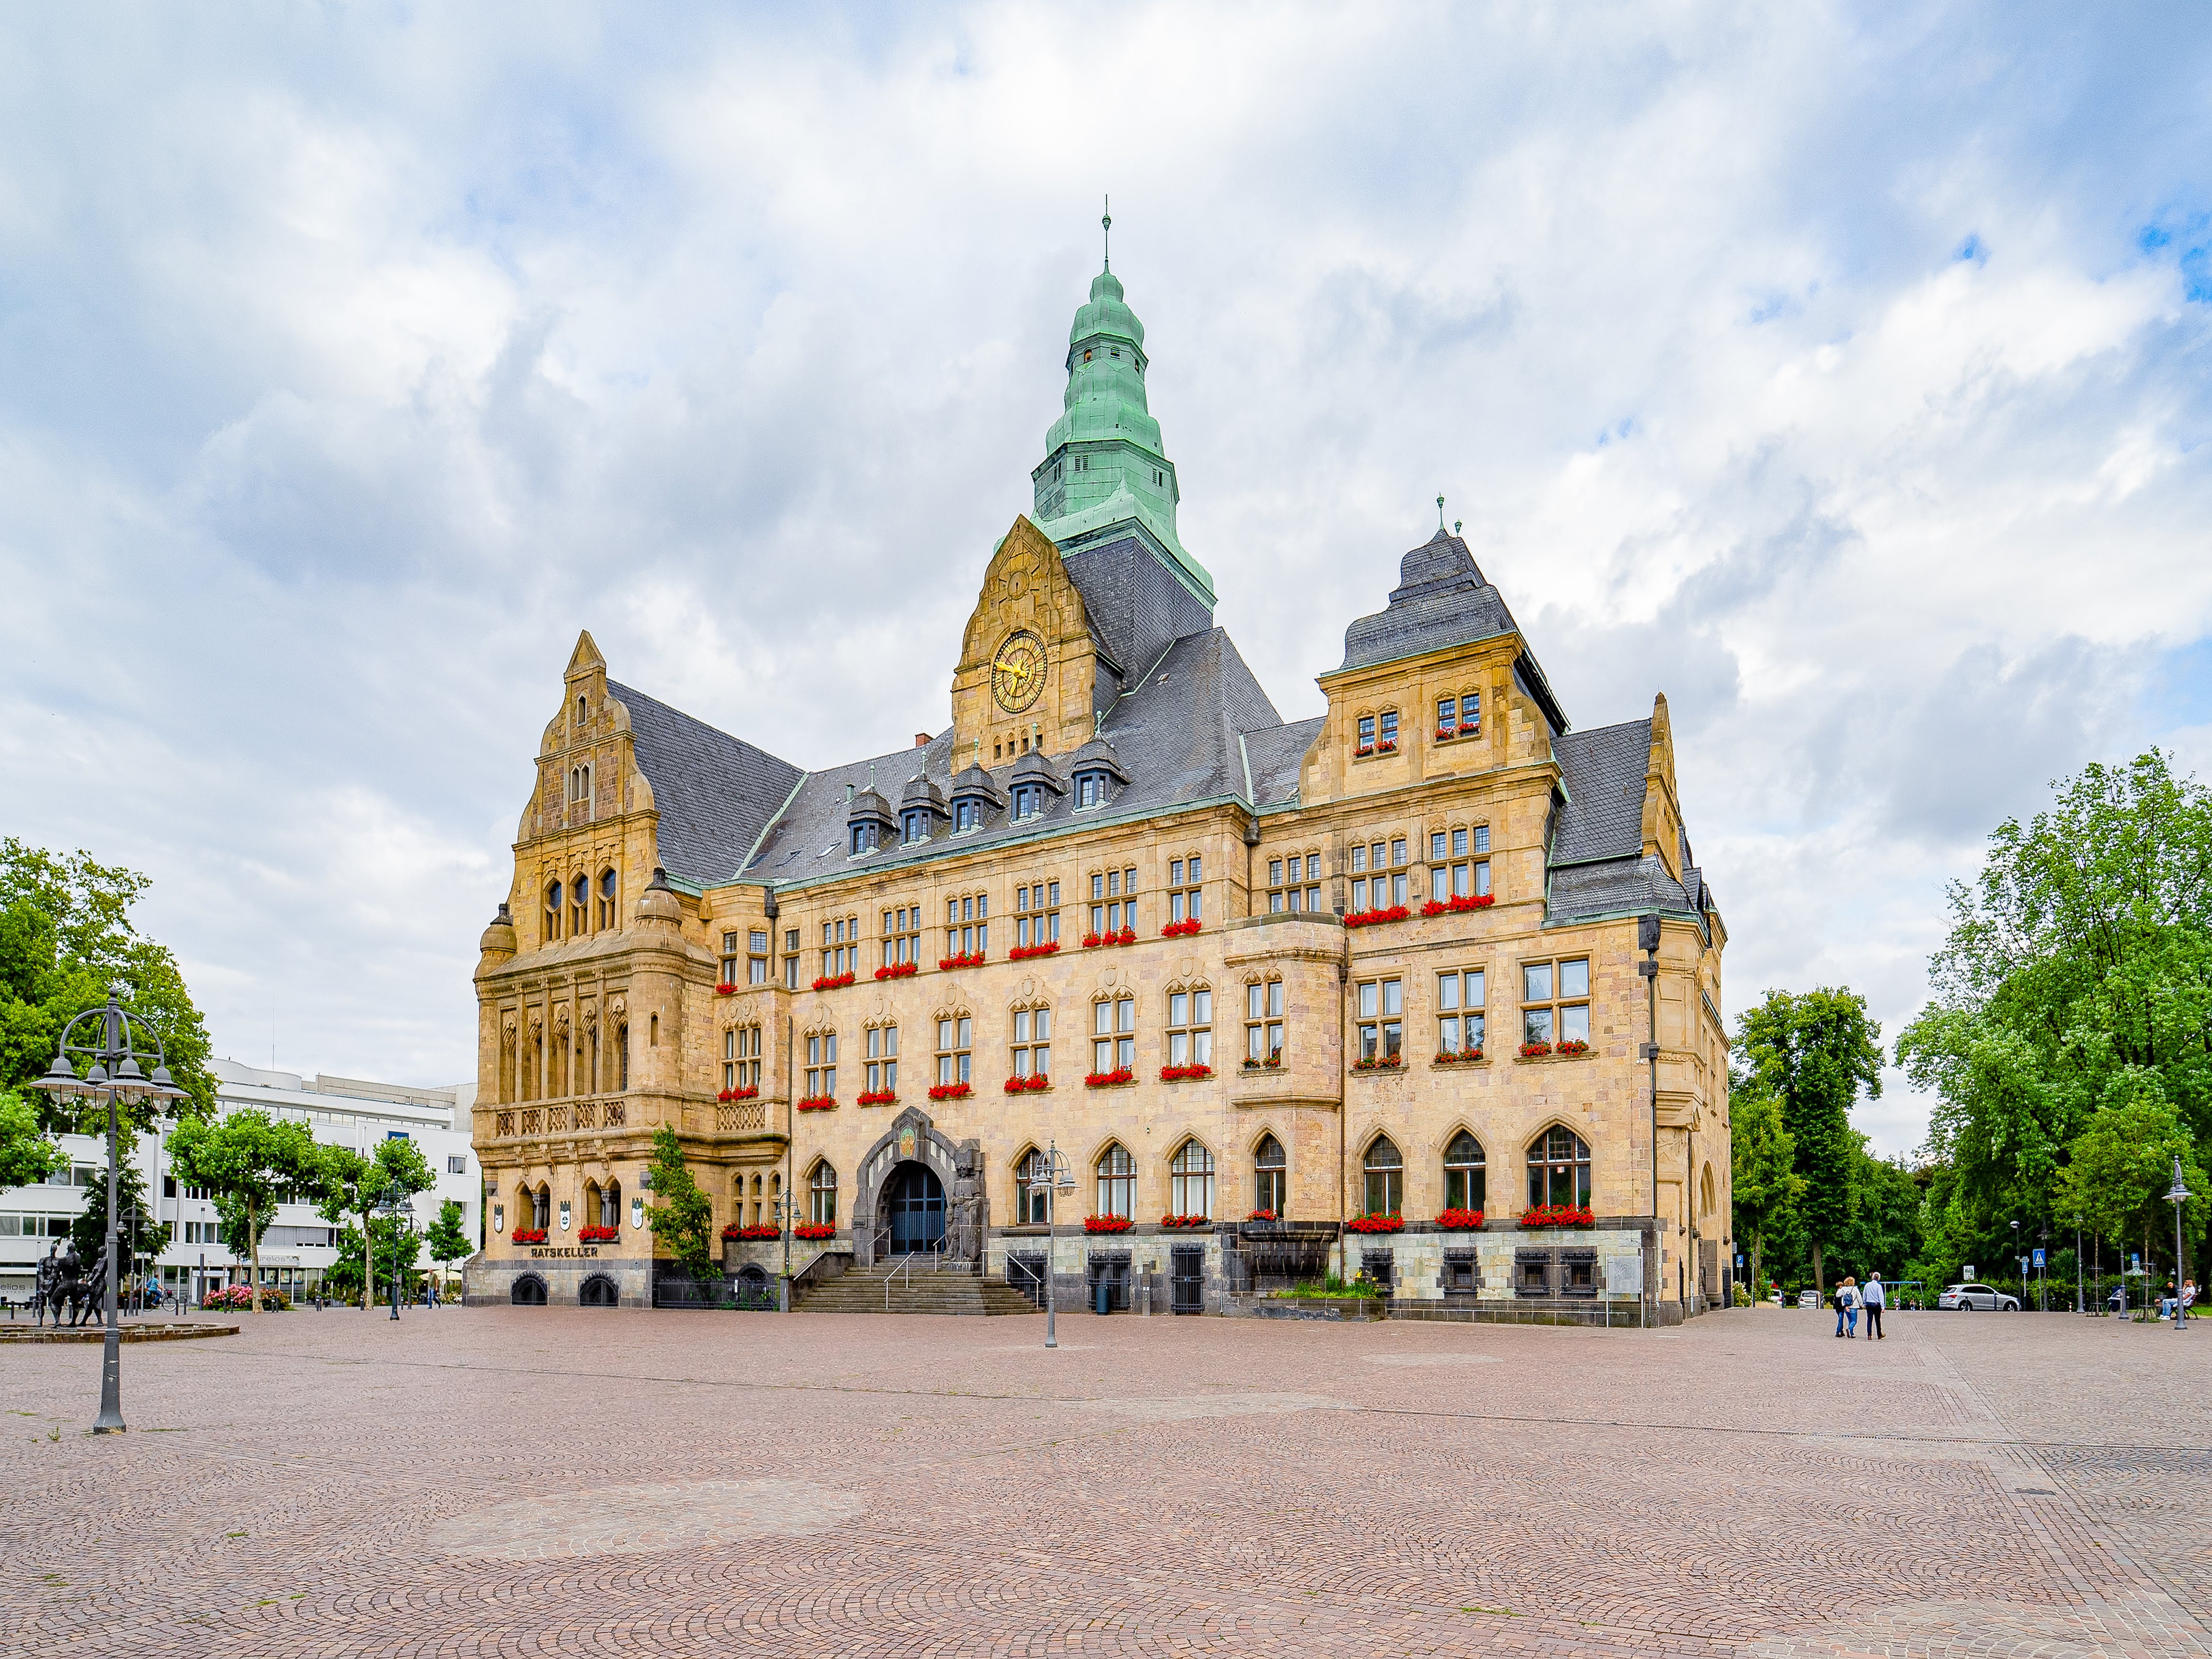 Ansicht der Stadt Recklinghausen mit dem Rathaus